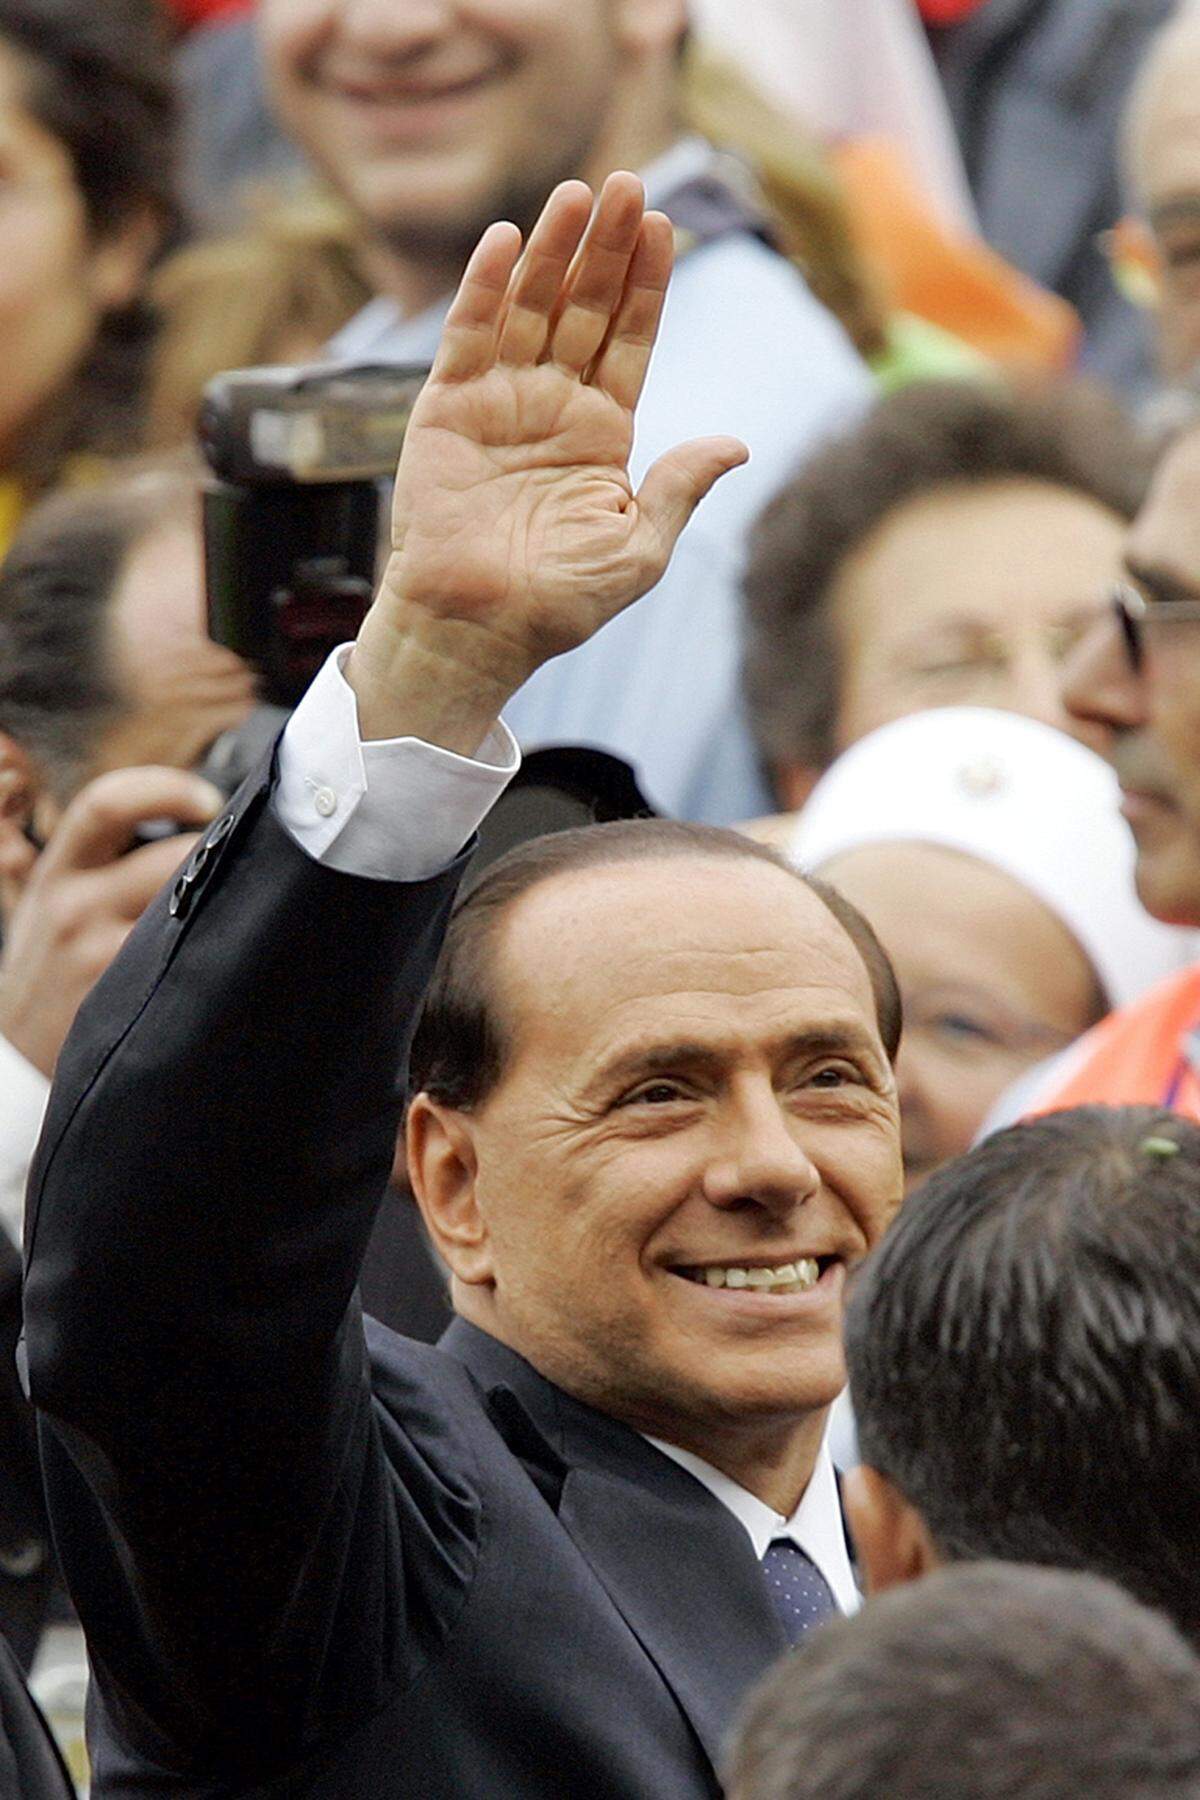 1994 wurde Berlusconi erstmals italienischer Regierungschef. Im selben Jahr wurde er beschuldigt, die Steuerpolizei geschmiert zu haben. 1996 wurde er deswegen zu 33 Monaten Gefängnis verurteilt, zwei Jahre später kam es zu einem Freispruch im Berufungsverfahren, teils wegen Verjährung. Im Oktober 2001, kurz nach dem zweiten Amtsantritt Berlusconis als Regierungschef, bescheinigte ihm das Kassationsgericht seine Unschuld.